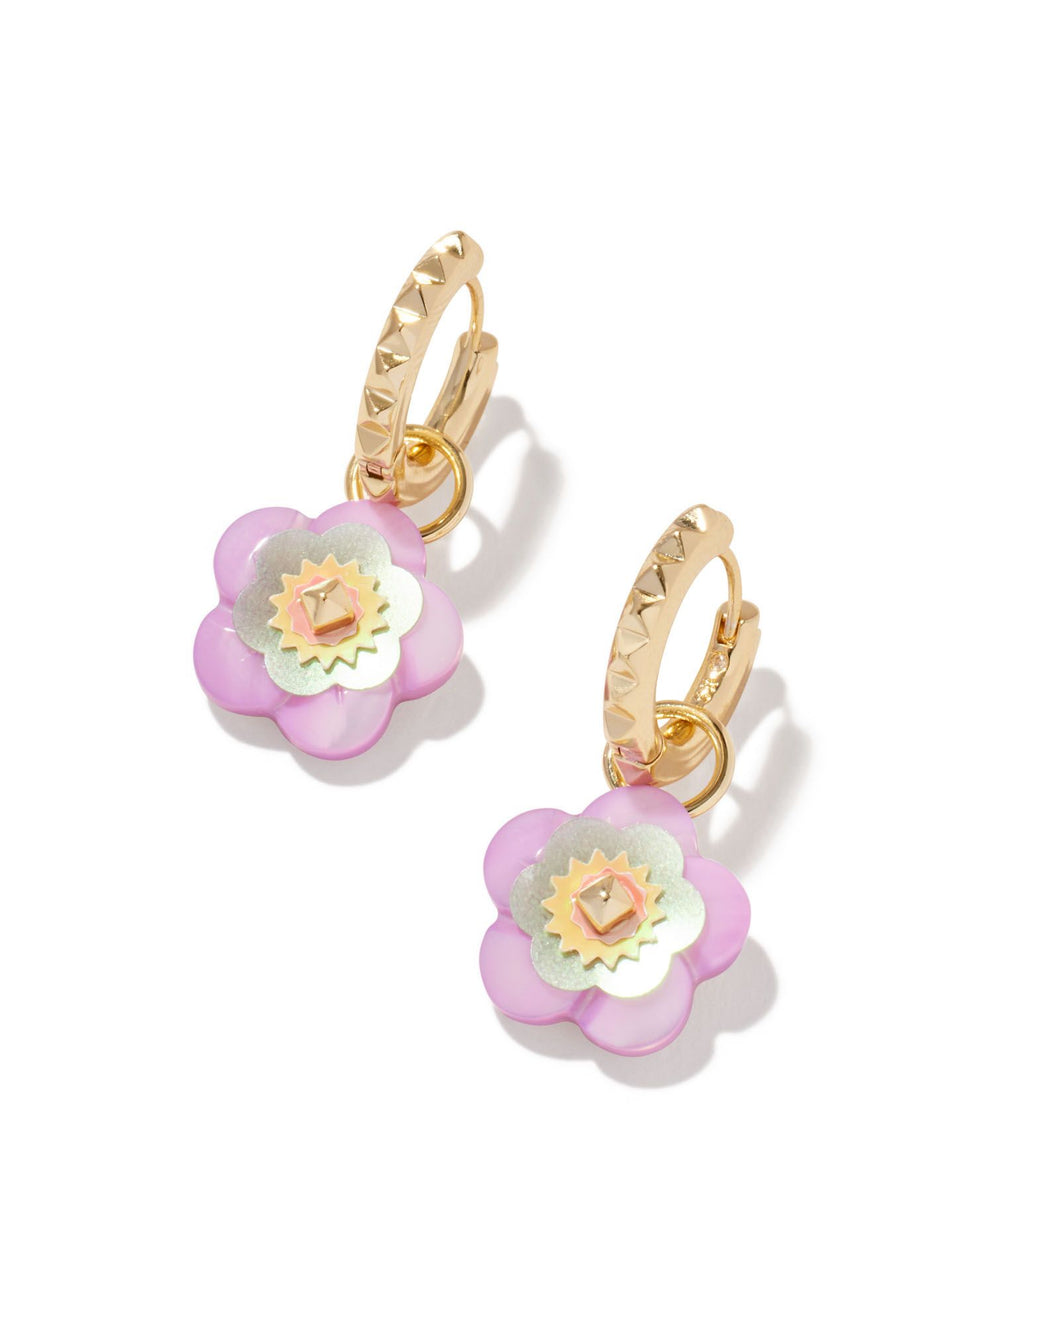 Deliah Gold Huggie Earrings in Pastel Mix